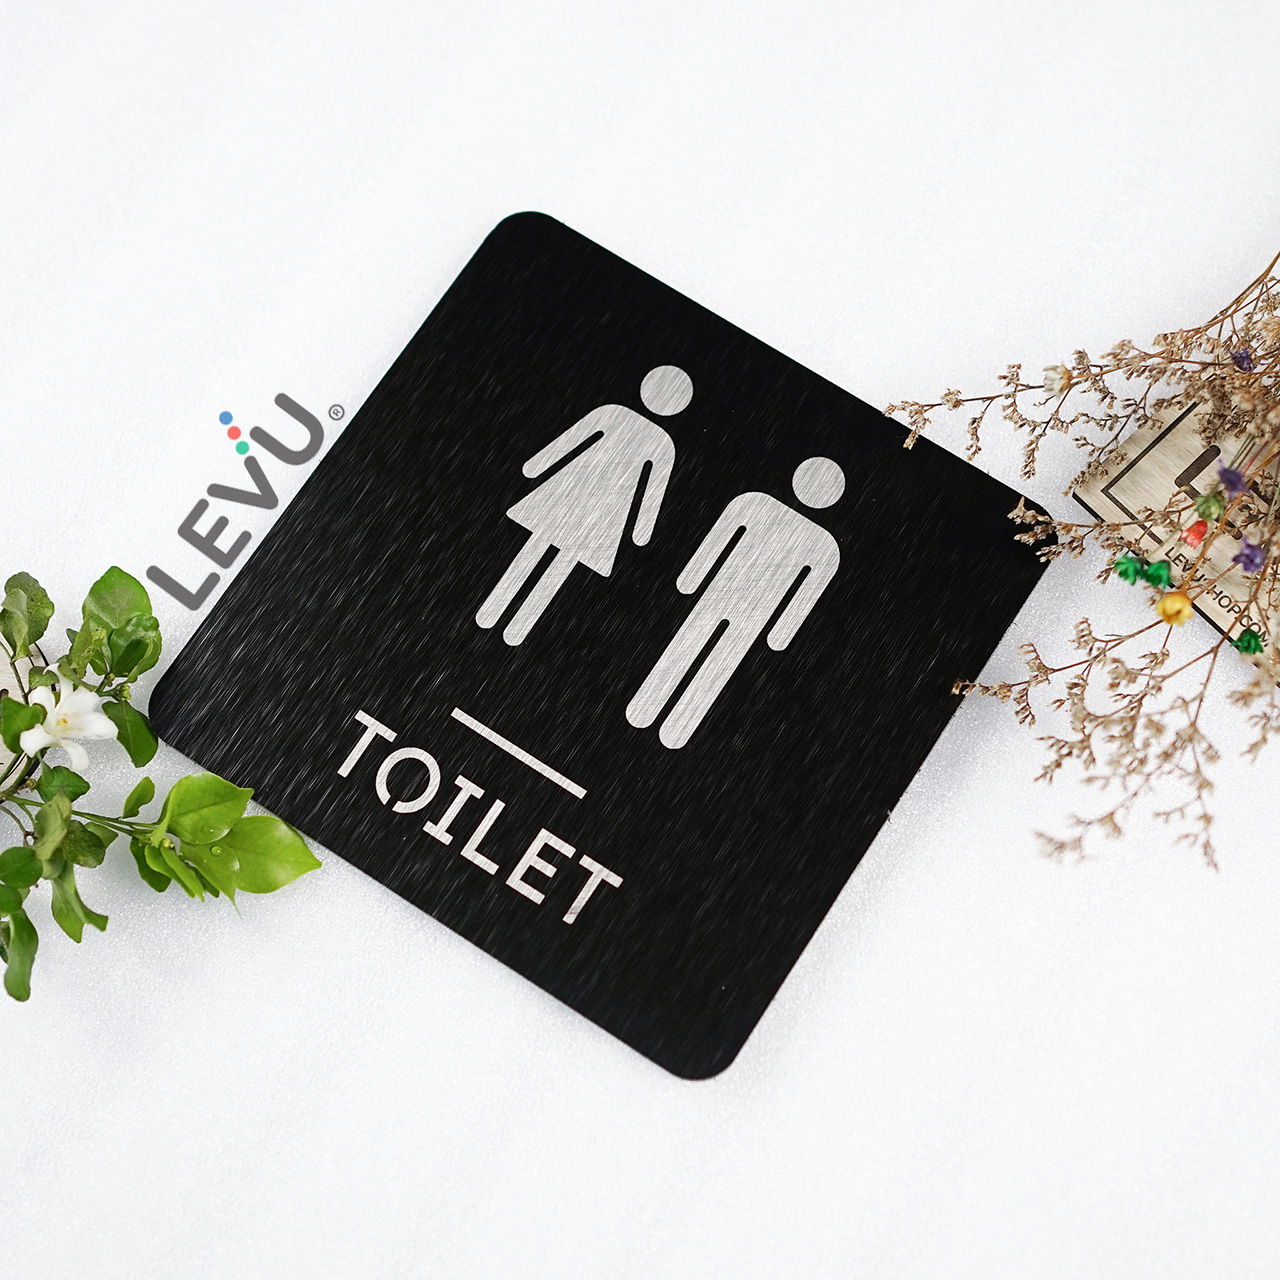 Bảng toilet bằng nhôm alu đen xước trang trí cửa khu vực nhà vệ sinh